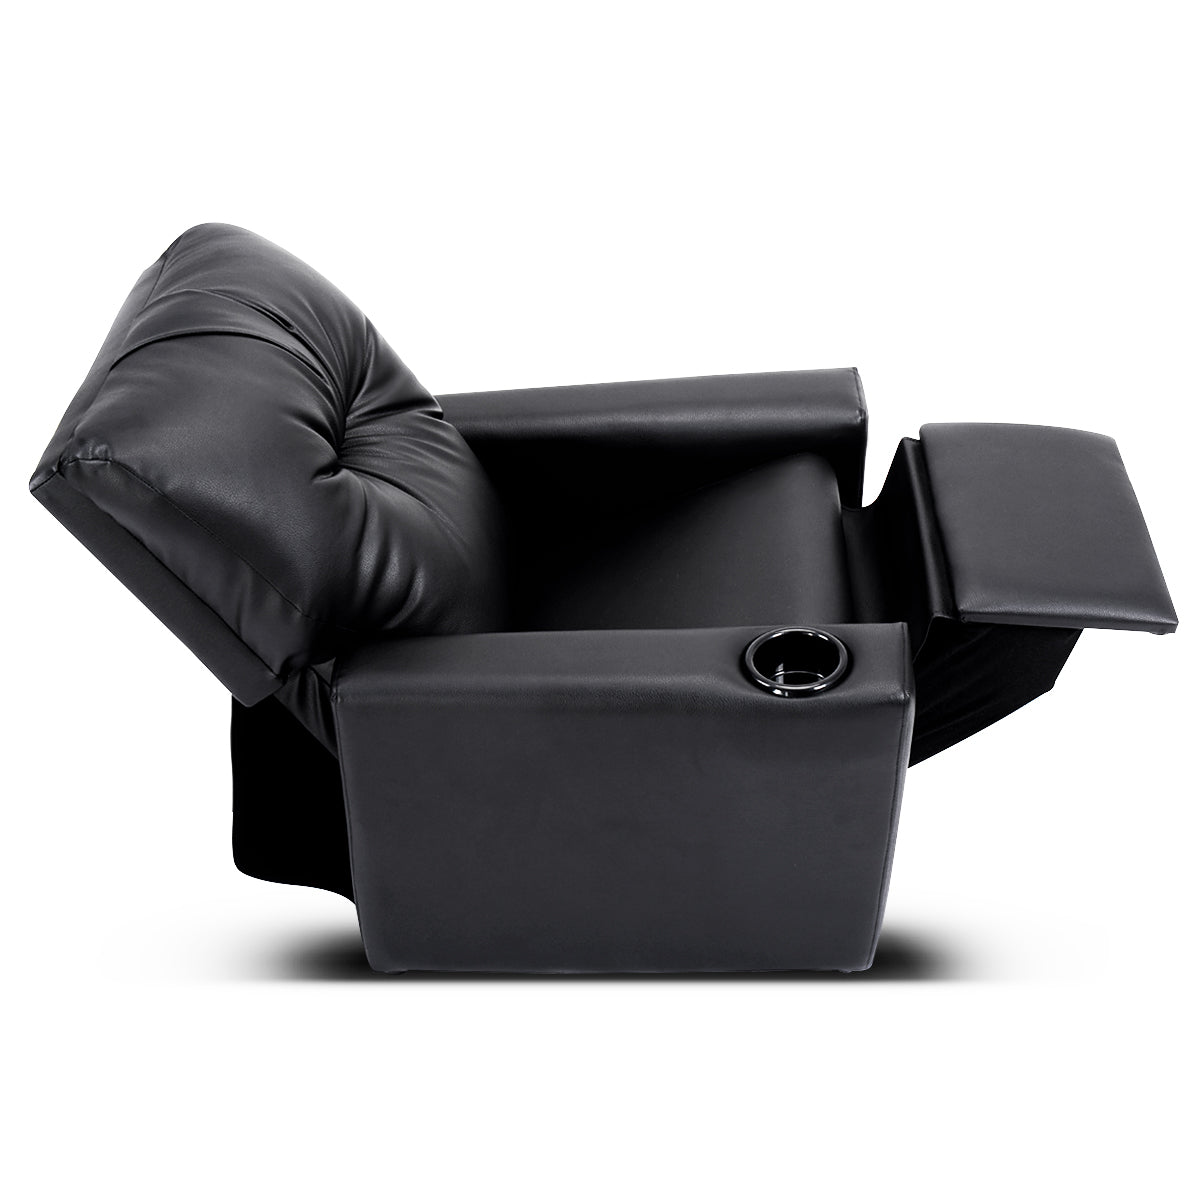 Black Kids Lounge Seat: Adjustable Comfort with High Backrest and Armrest